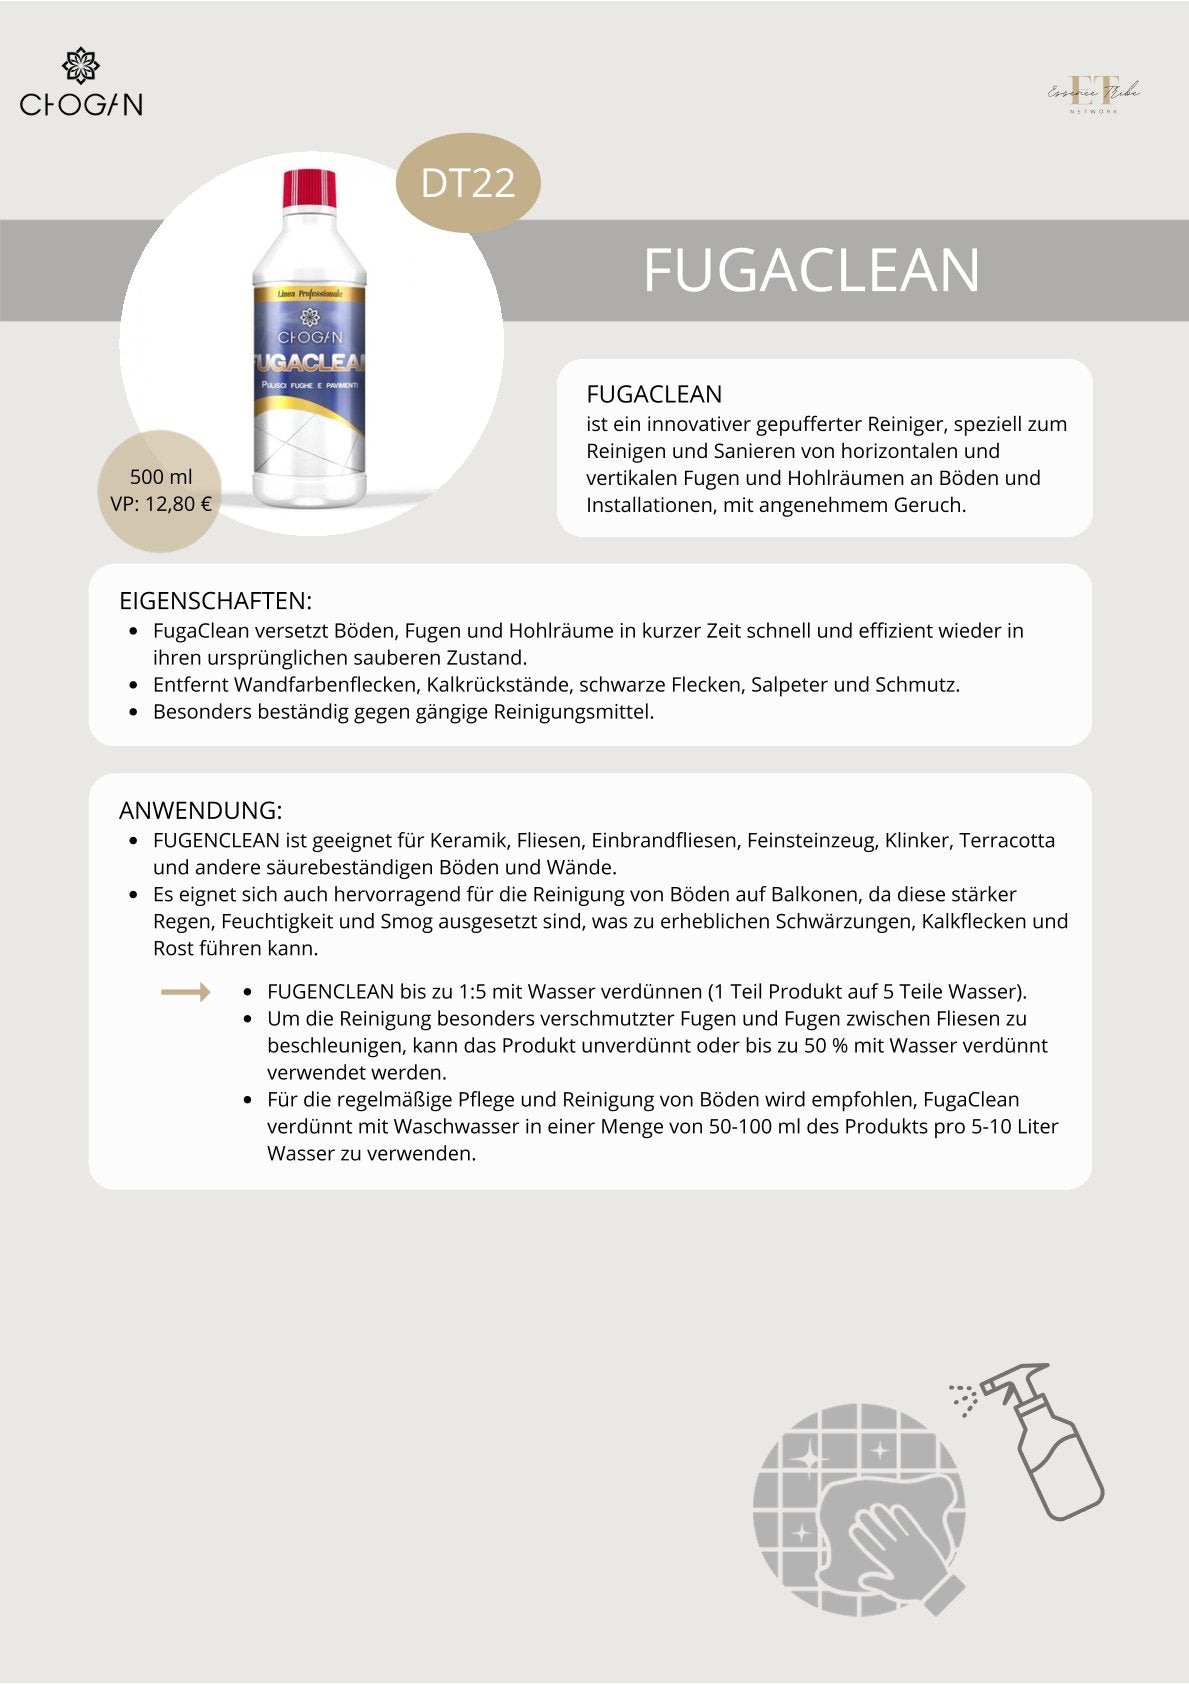 Fugaclean – Konzentrierter Fugenreiniger